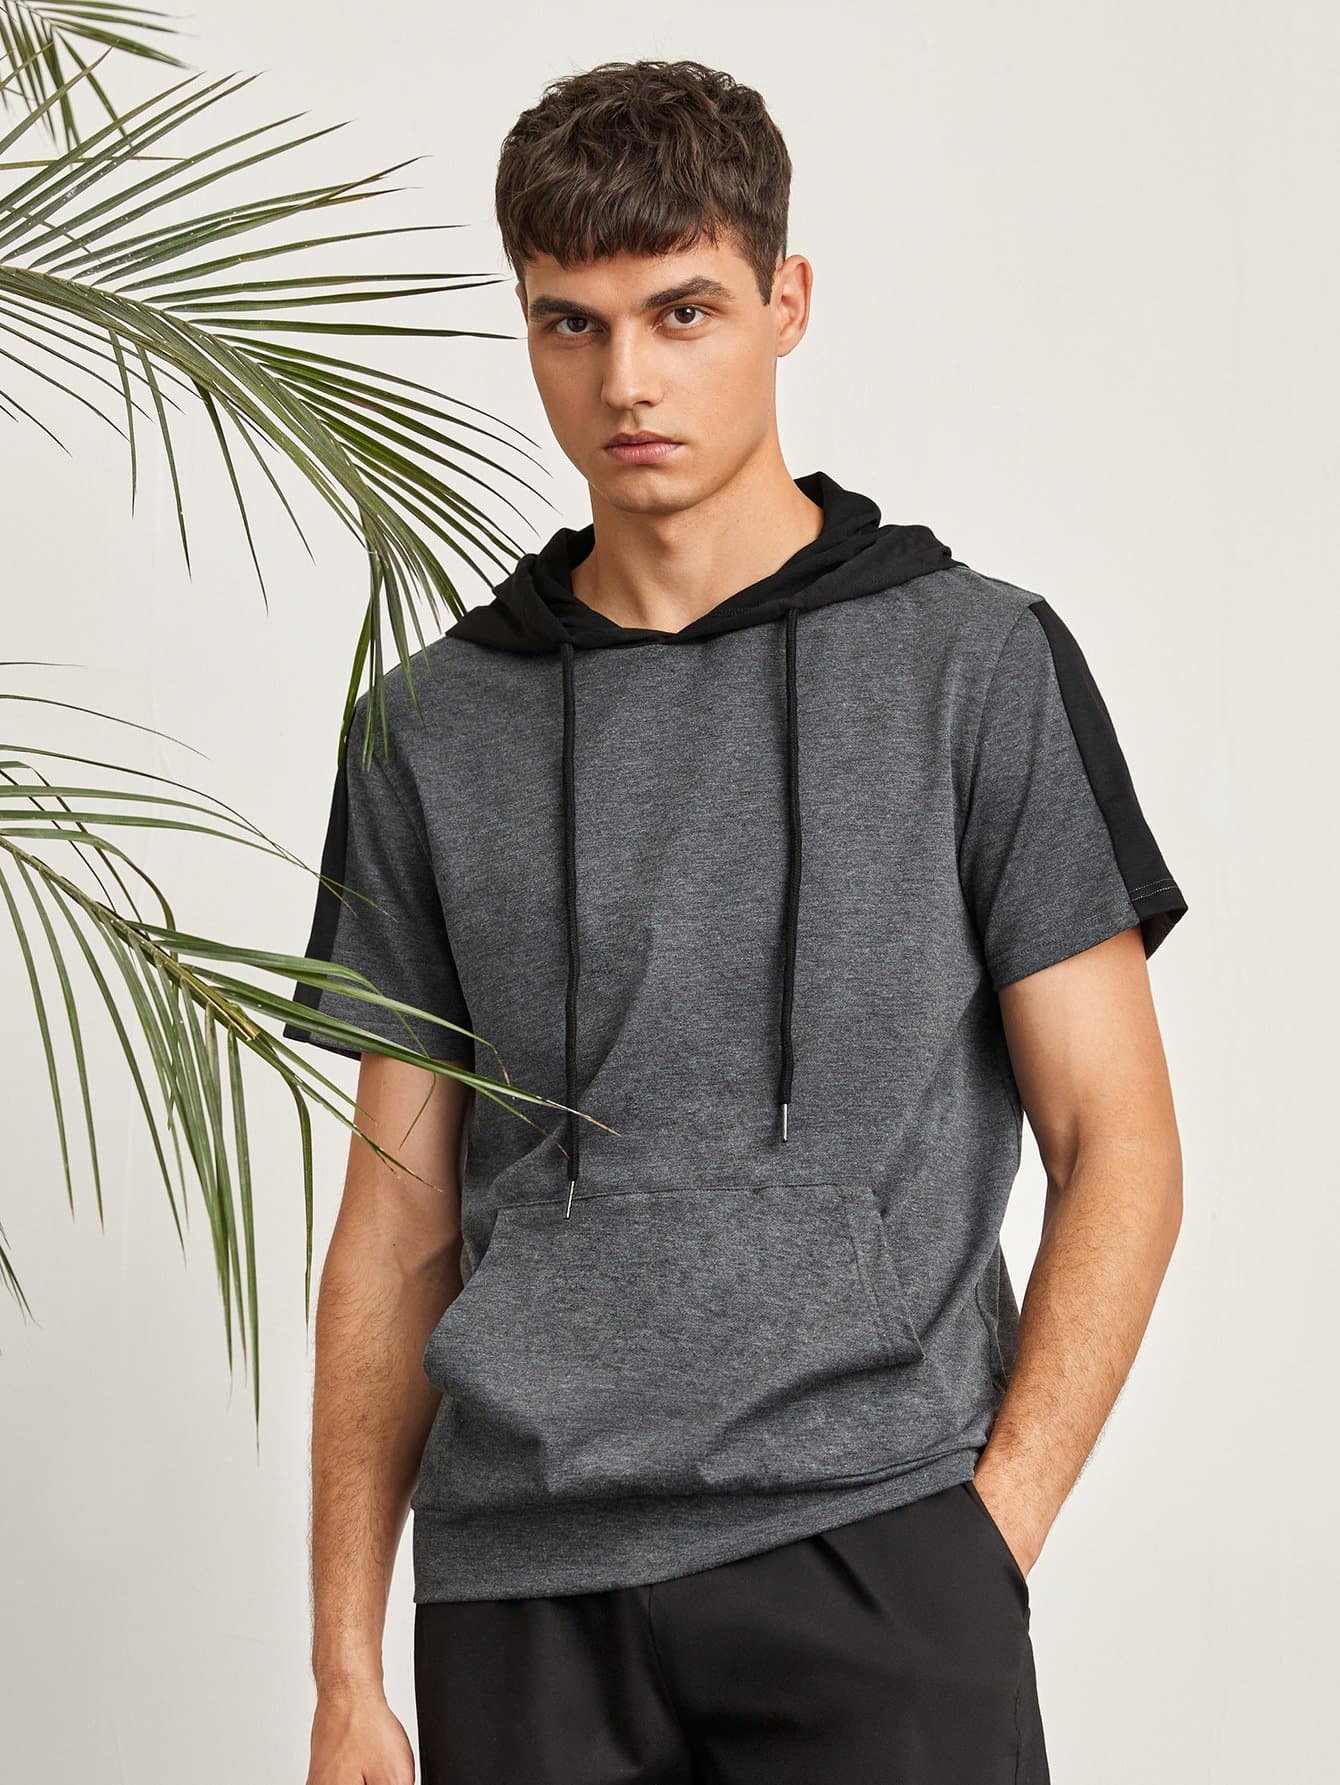 Dark Grey Kangaroo Pocket Striped Side Hoodie Sweatshirt